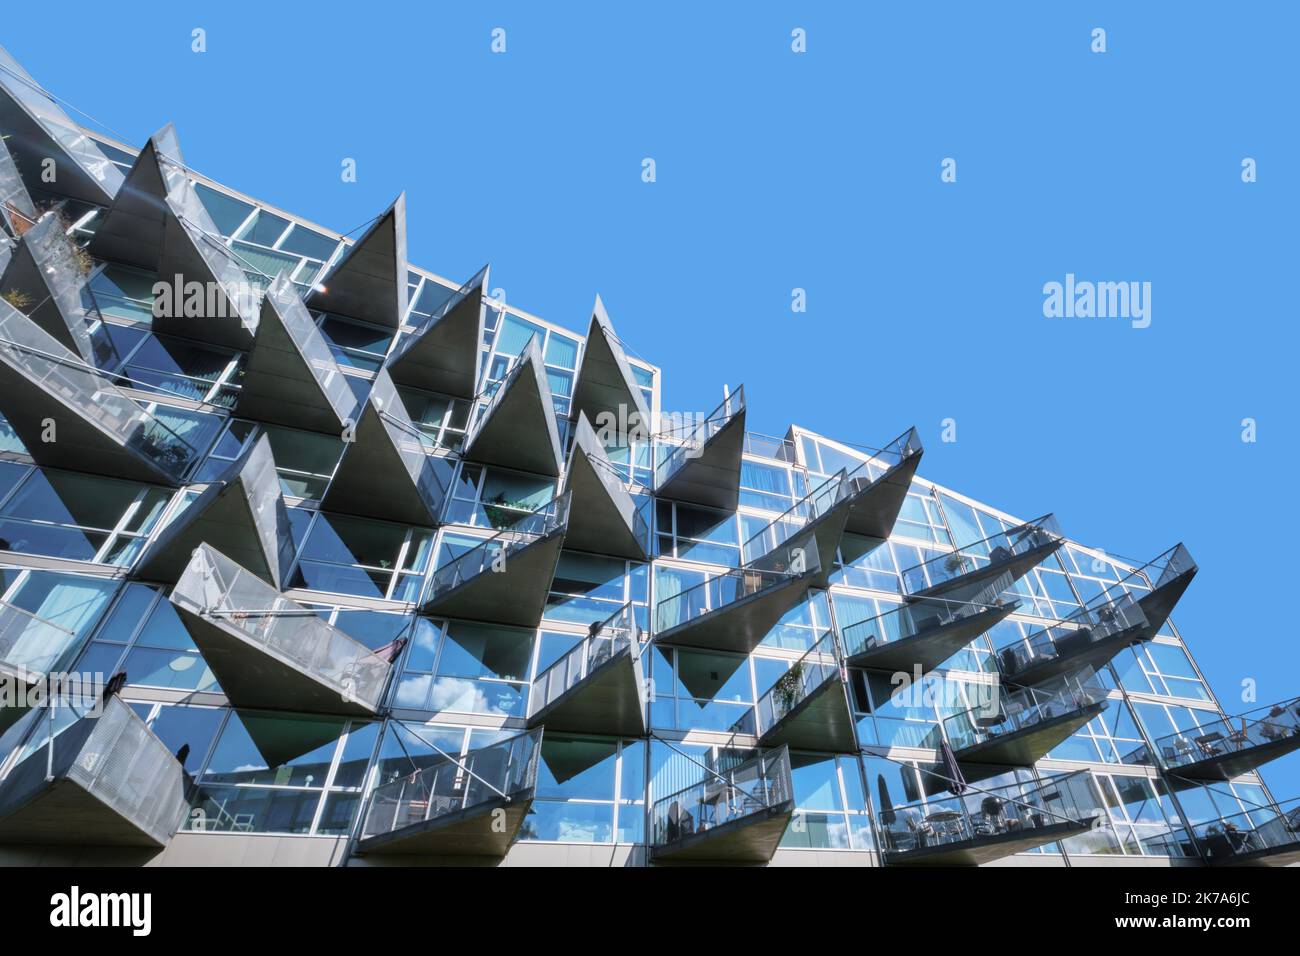 Copenhagen, Danimarca - Settembre 2022: VM Case con balconi triangolari dall'aspetto moderno, progettate da JDS e Bjarke Ingels Group, quartiere di Orestad Foto Stock